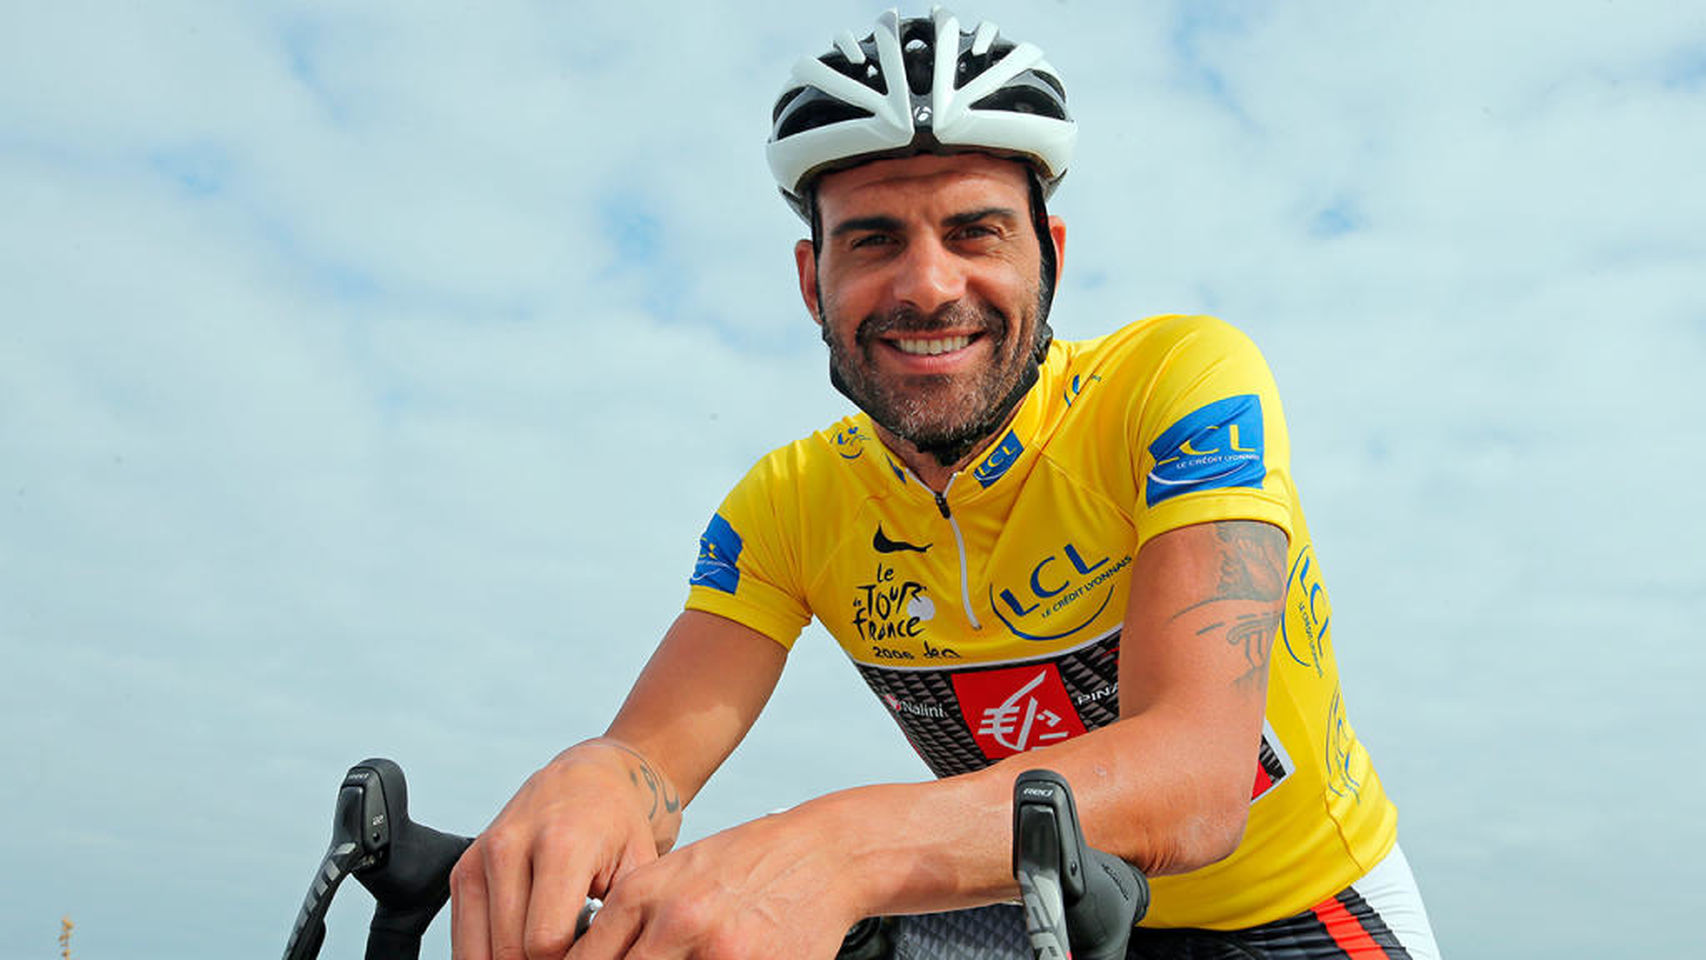 El ciclista Óscar Pereiro ganó el Tour de Francia 2006 / El Español